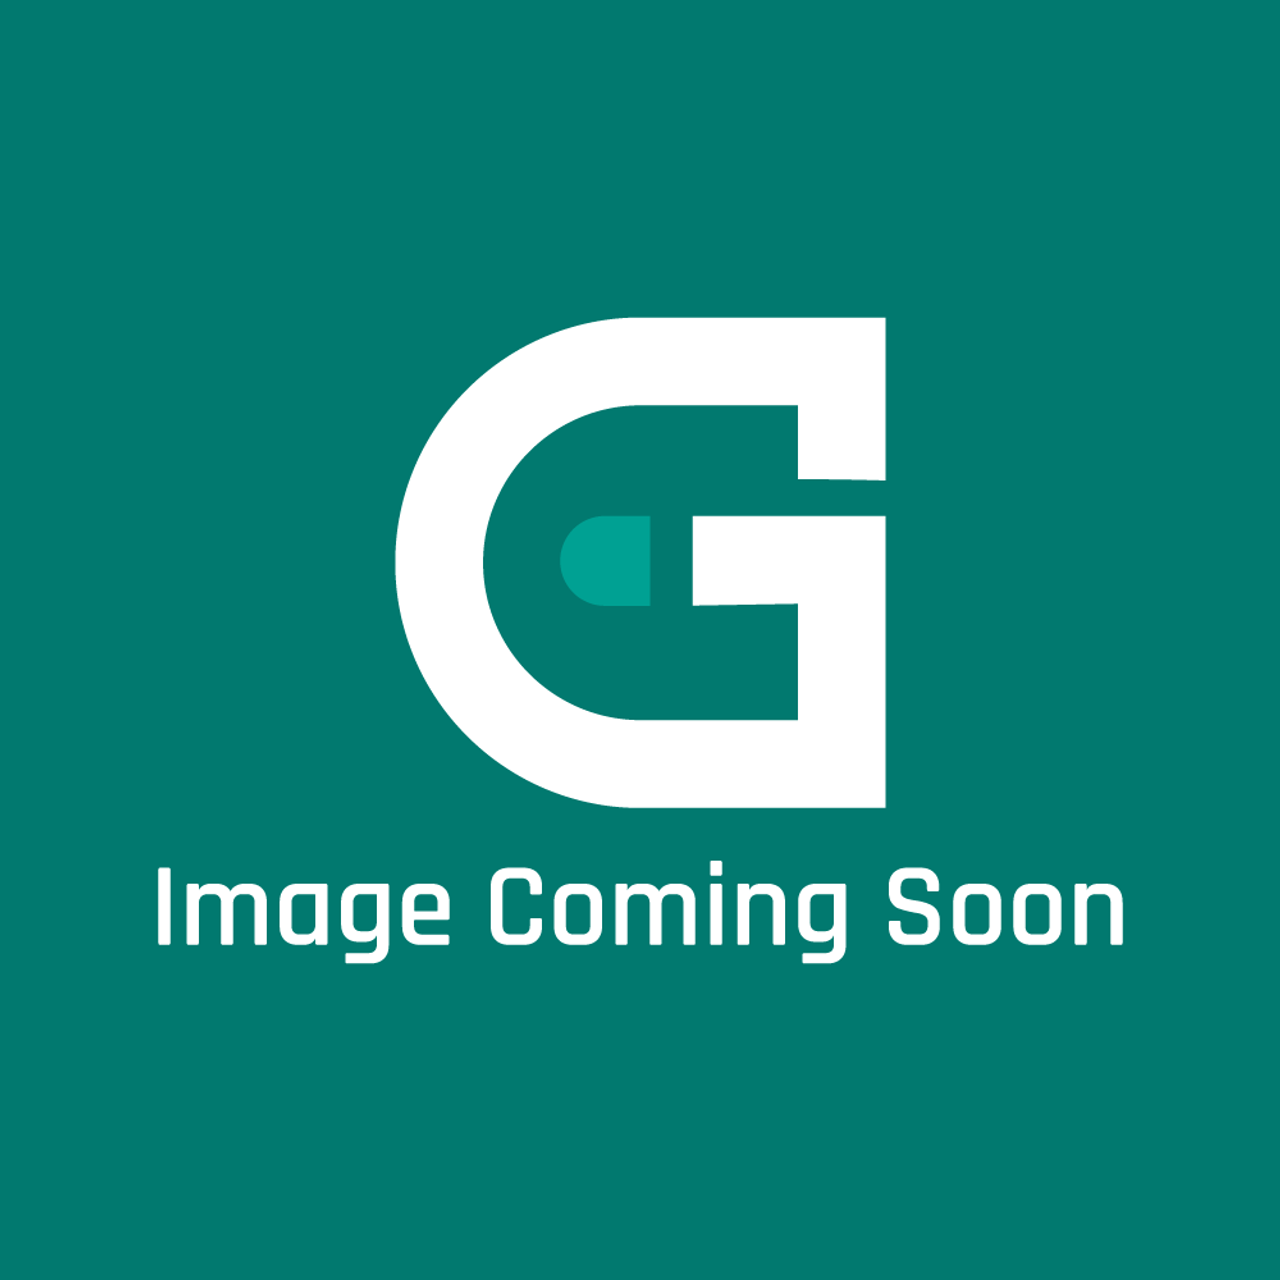 AGA Marvel R4906 - Burner Chamber Lhs(9/507) 208G - Image Coming Soon!